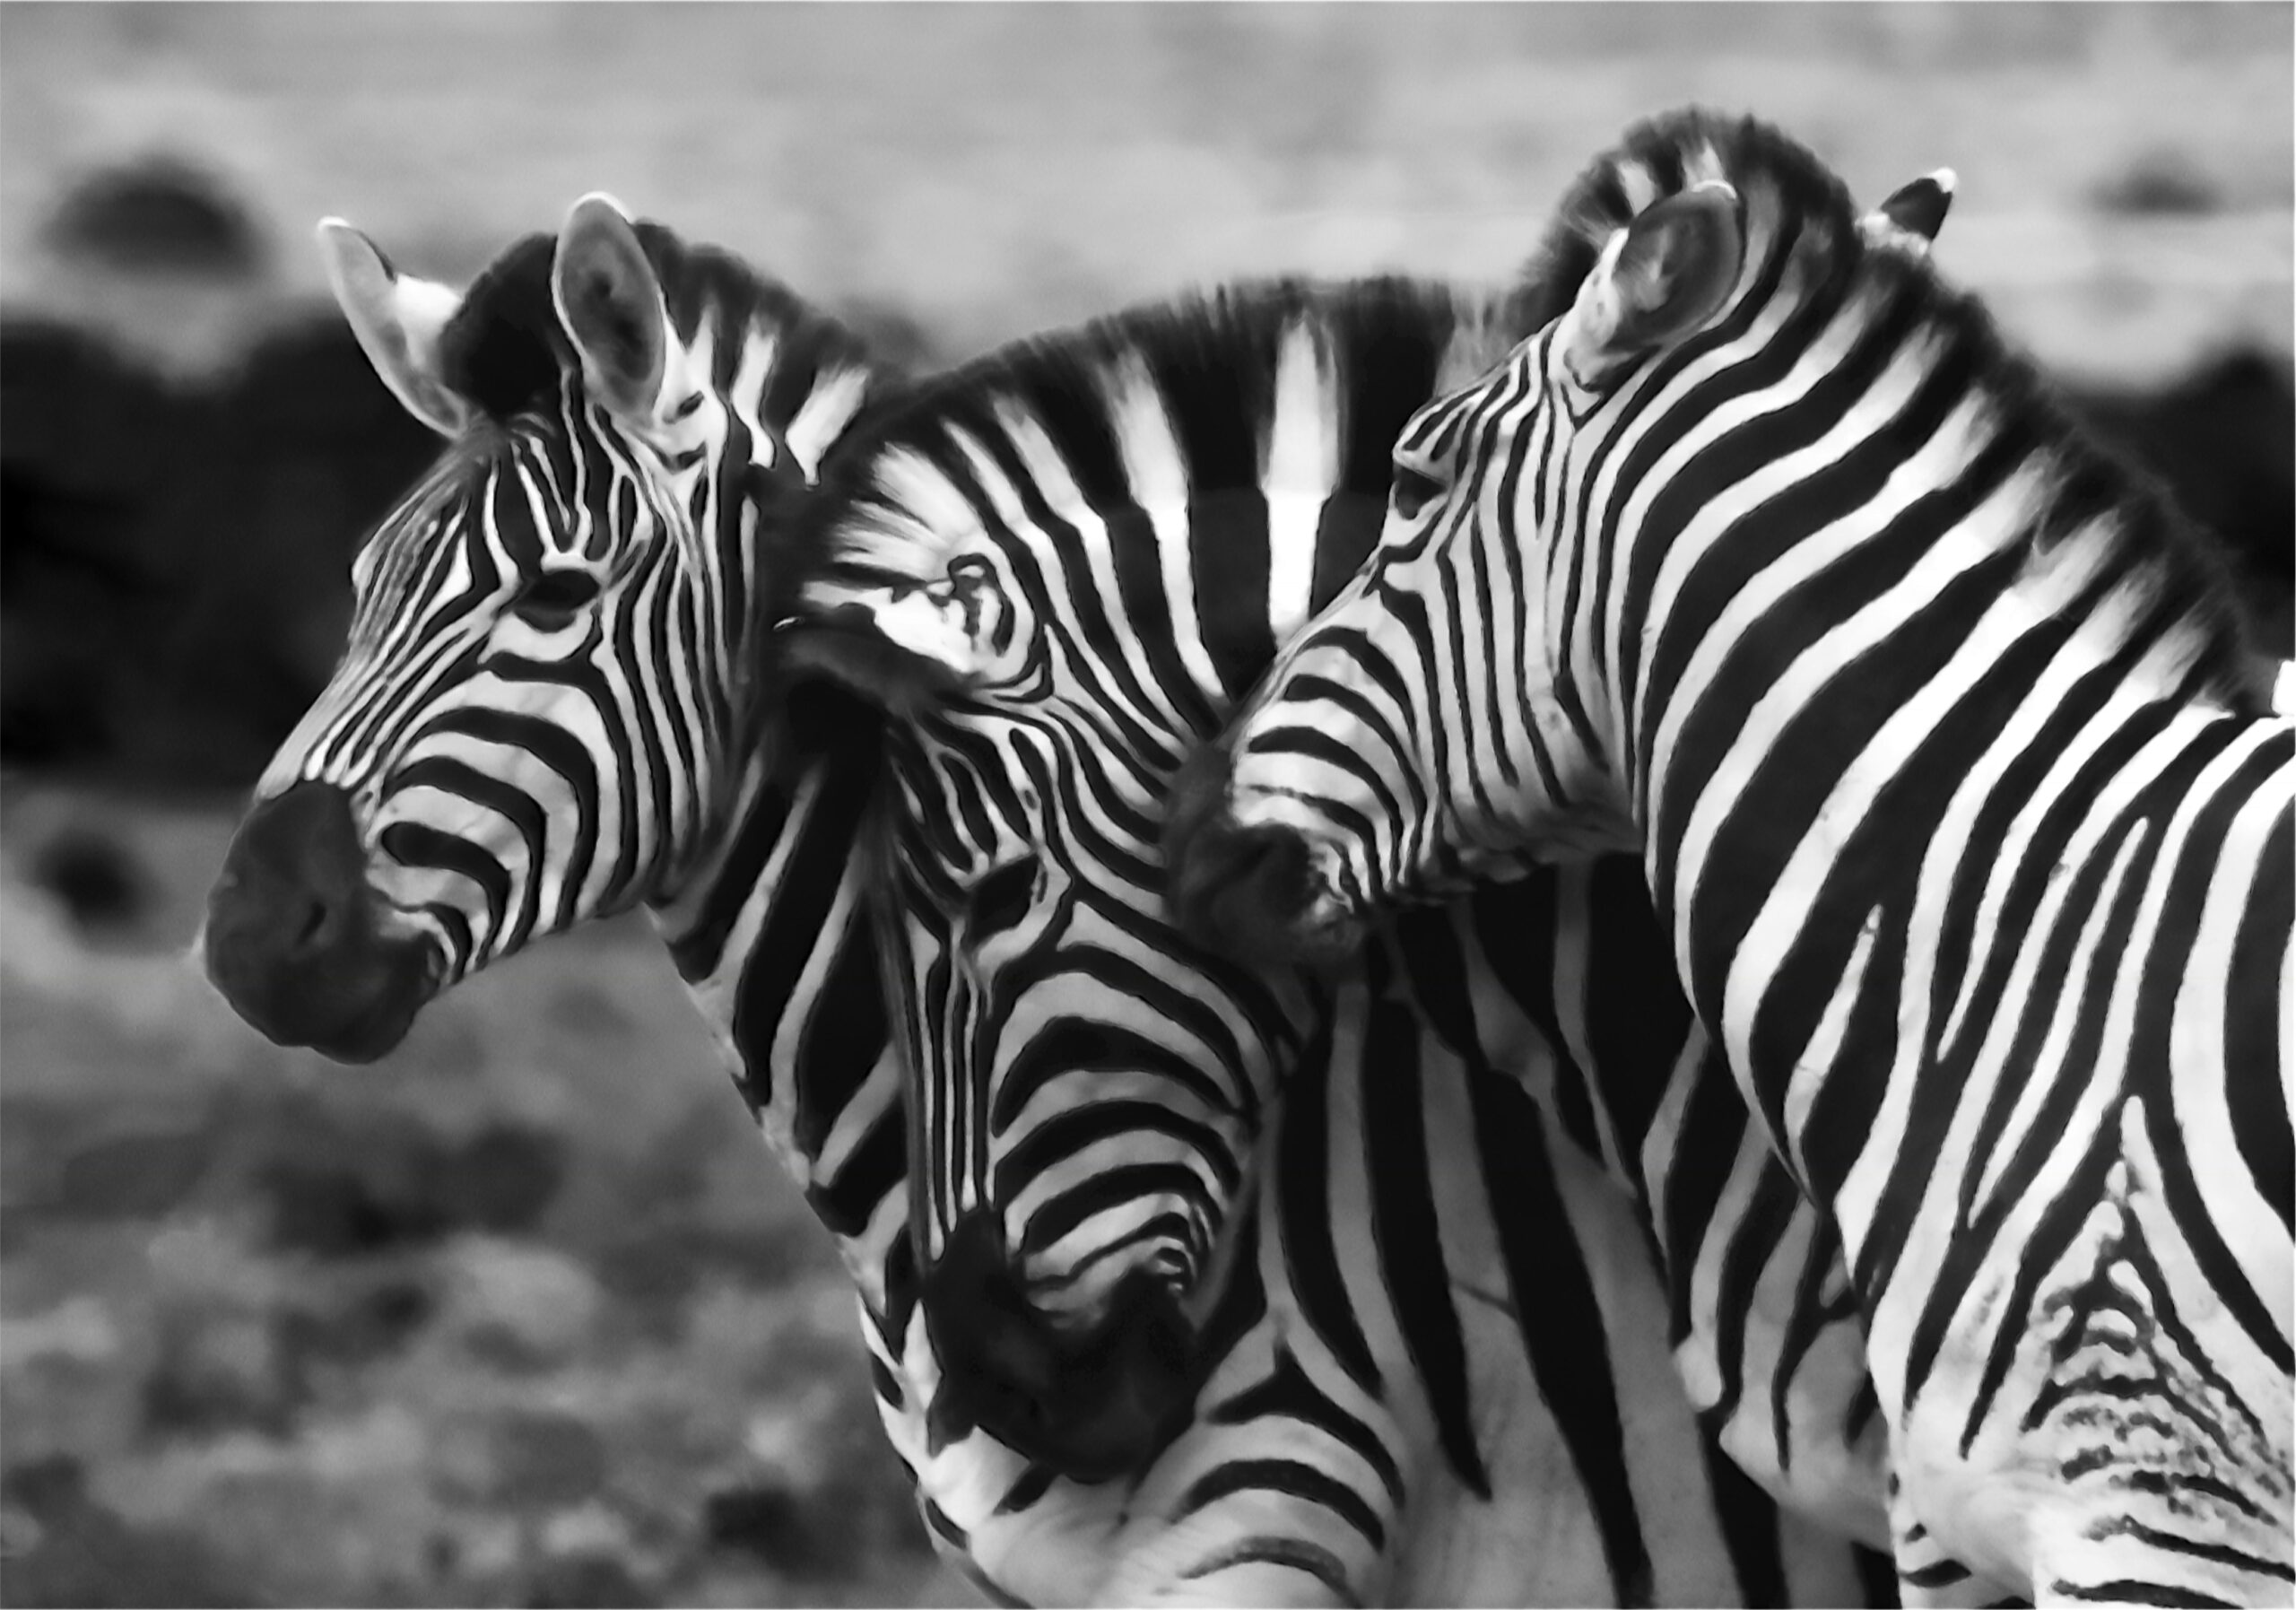 Bild von drei Oberkörpern von Zebras.